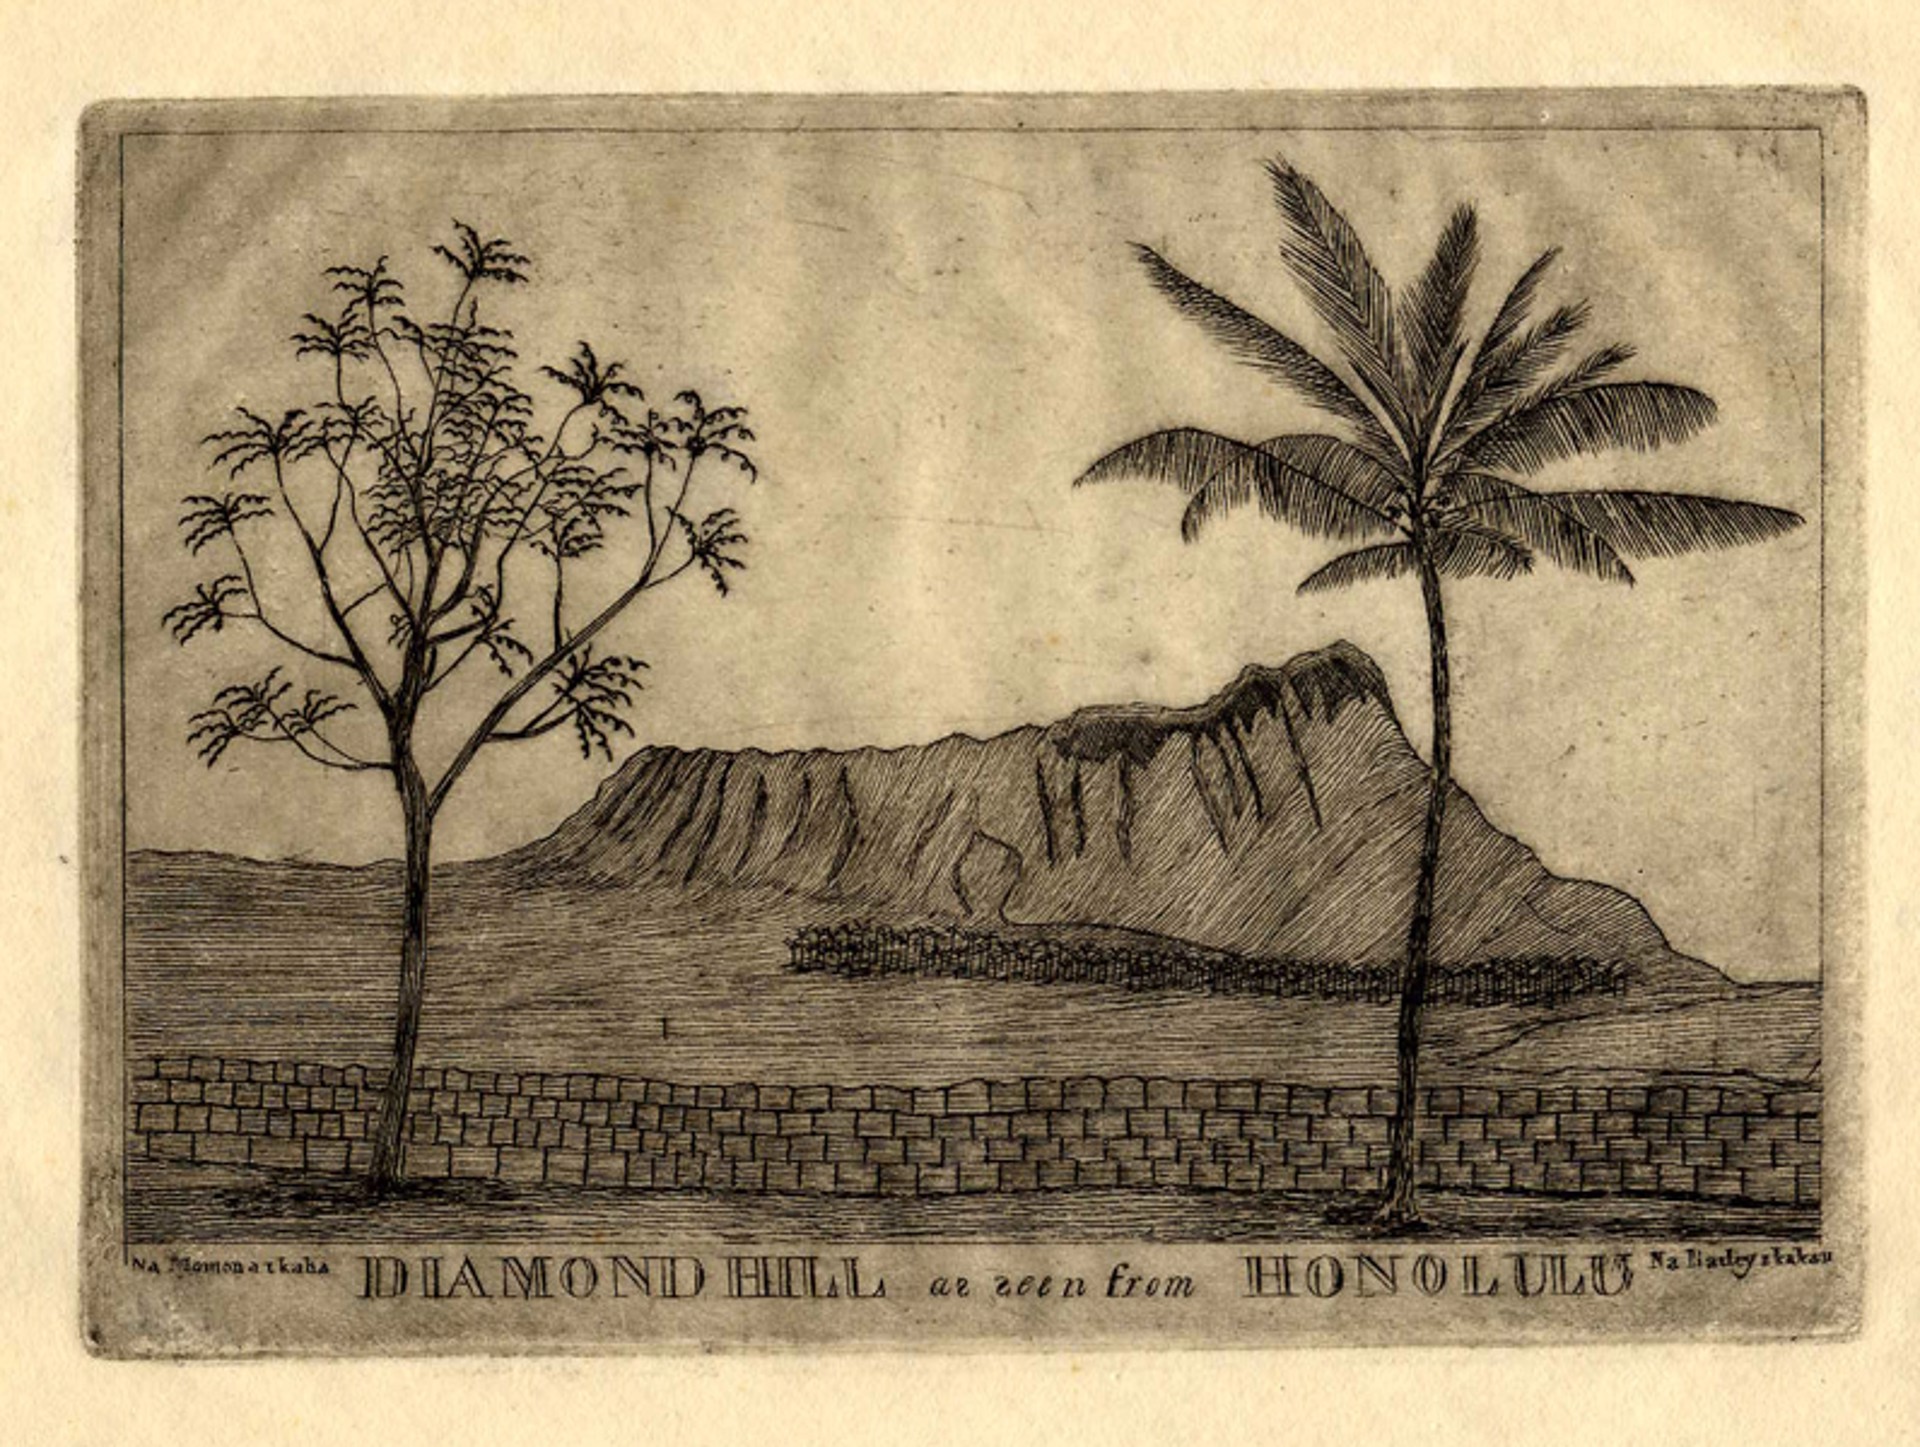 Diamond Hill as seen from Honolulu by Edward Bailey